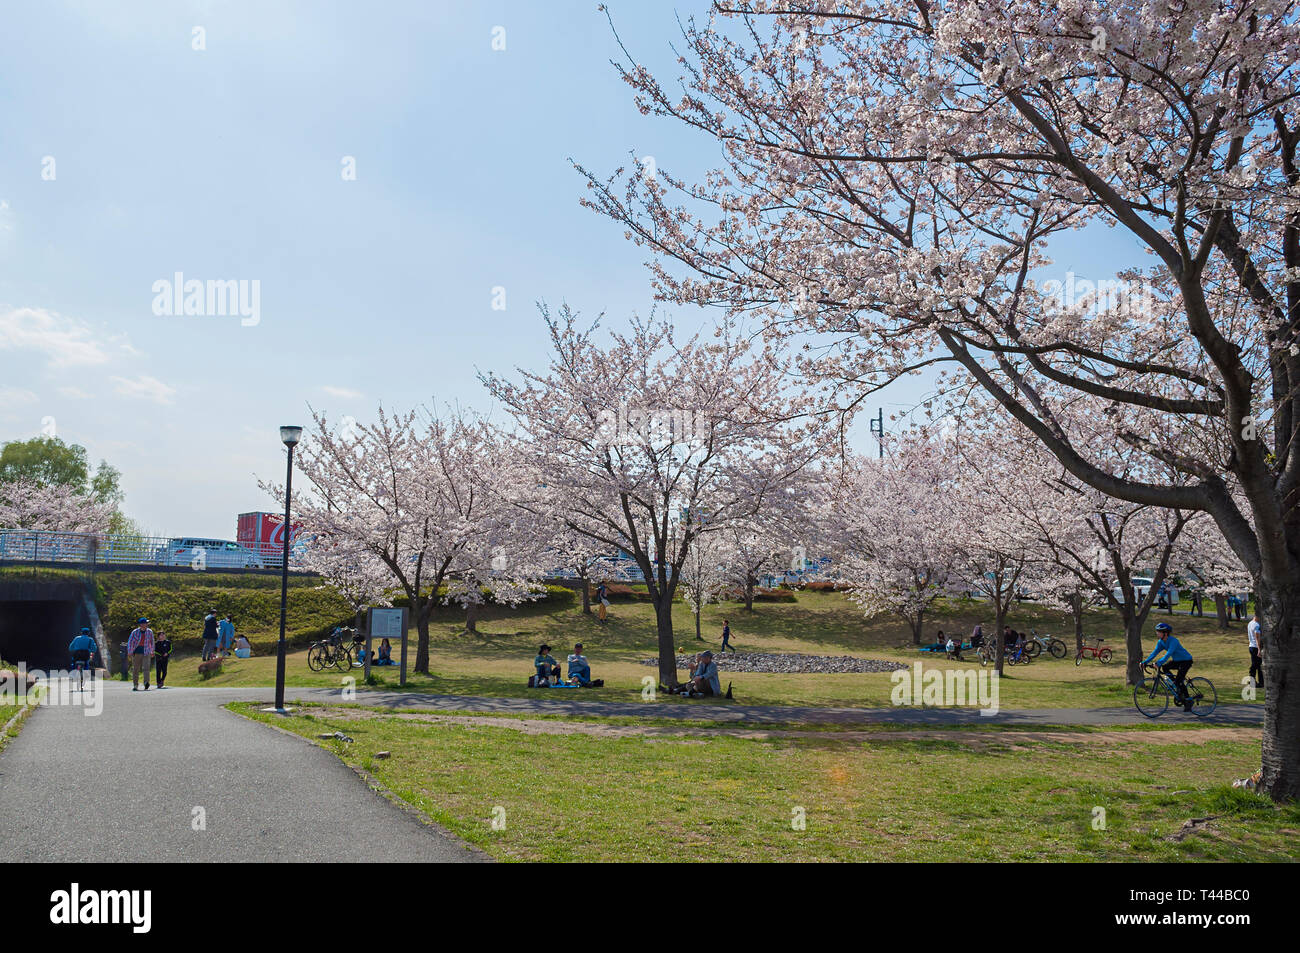 Kashiwa, Chiba, Giappone - Aprile 6, 2019: le persone che si godono la molla fiori di ciliegio o come noto come Hanami in un parco a Kashiwa, Giappone. Foto Stock